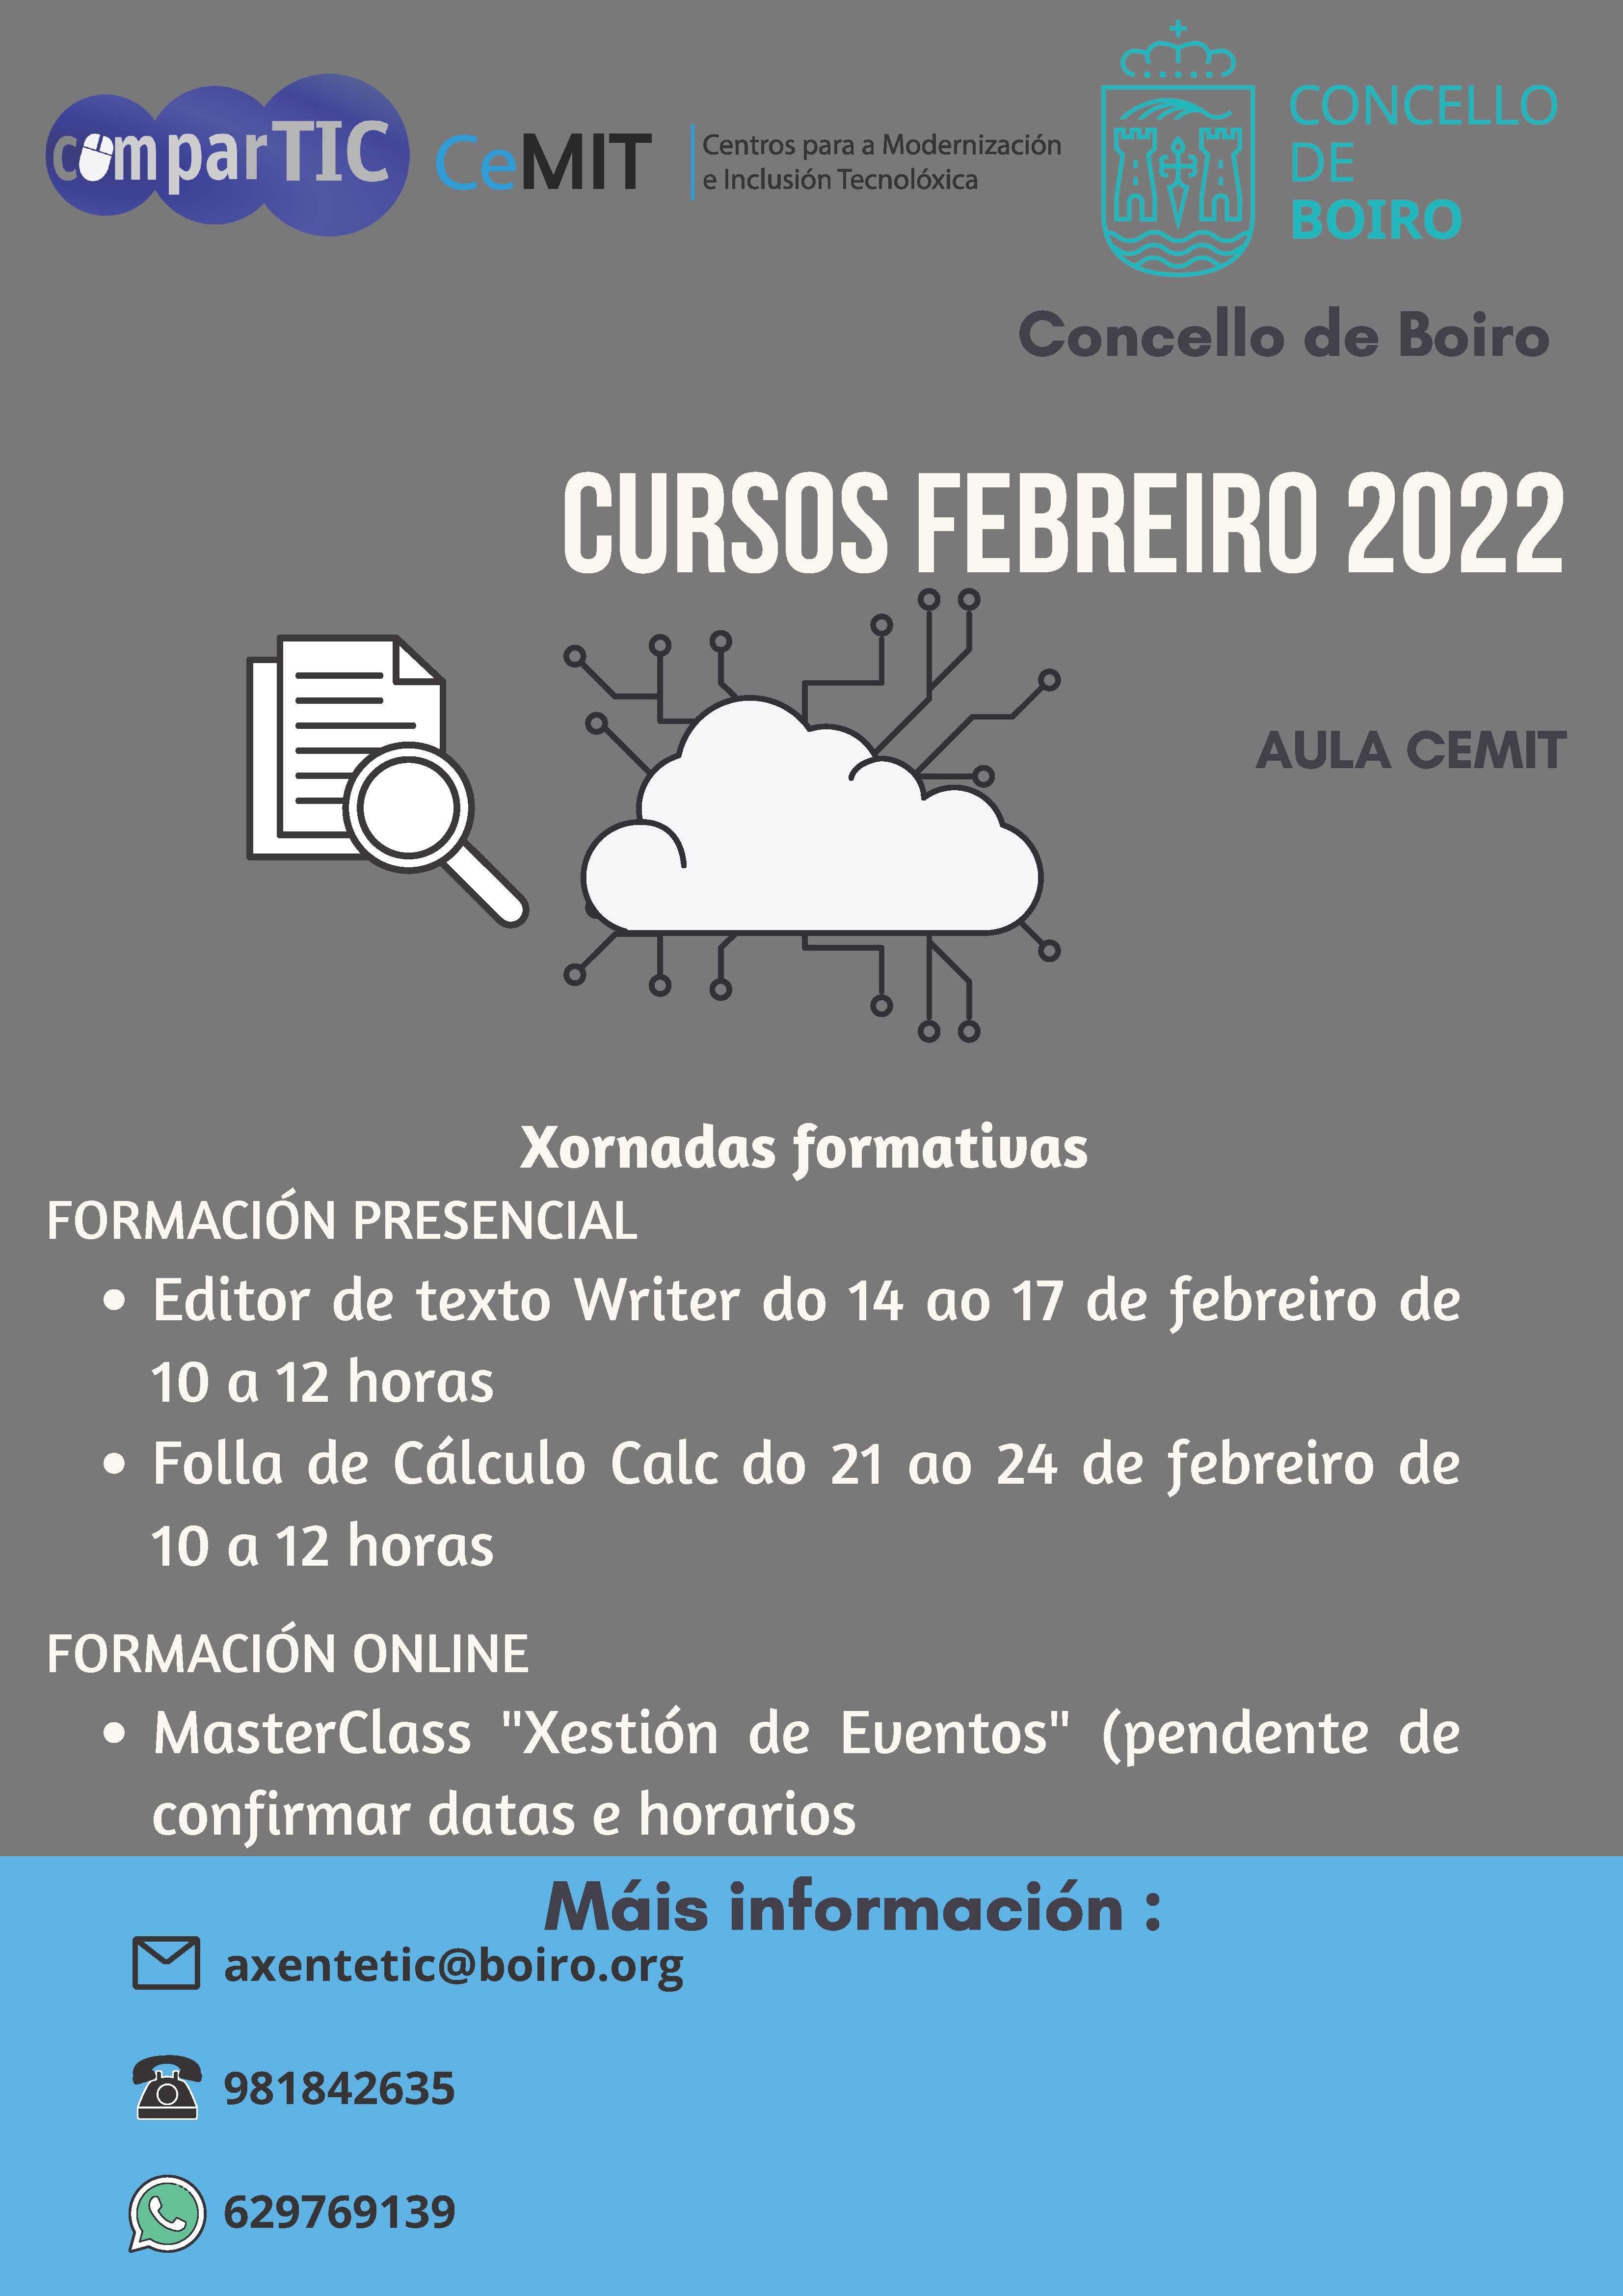 Cursos Aula CeMIT - febreiro 2022 